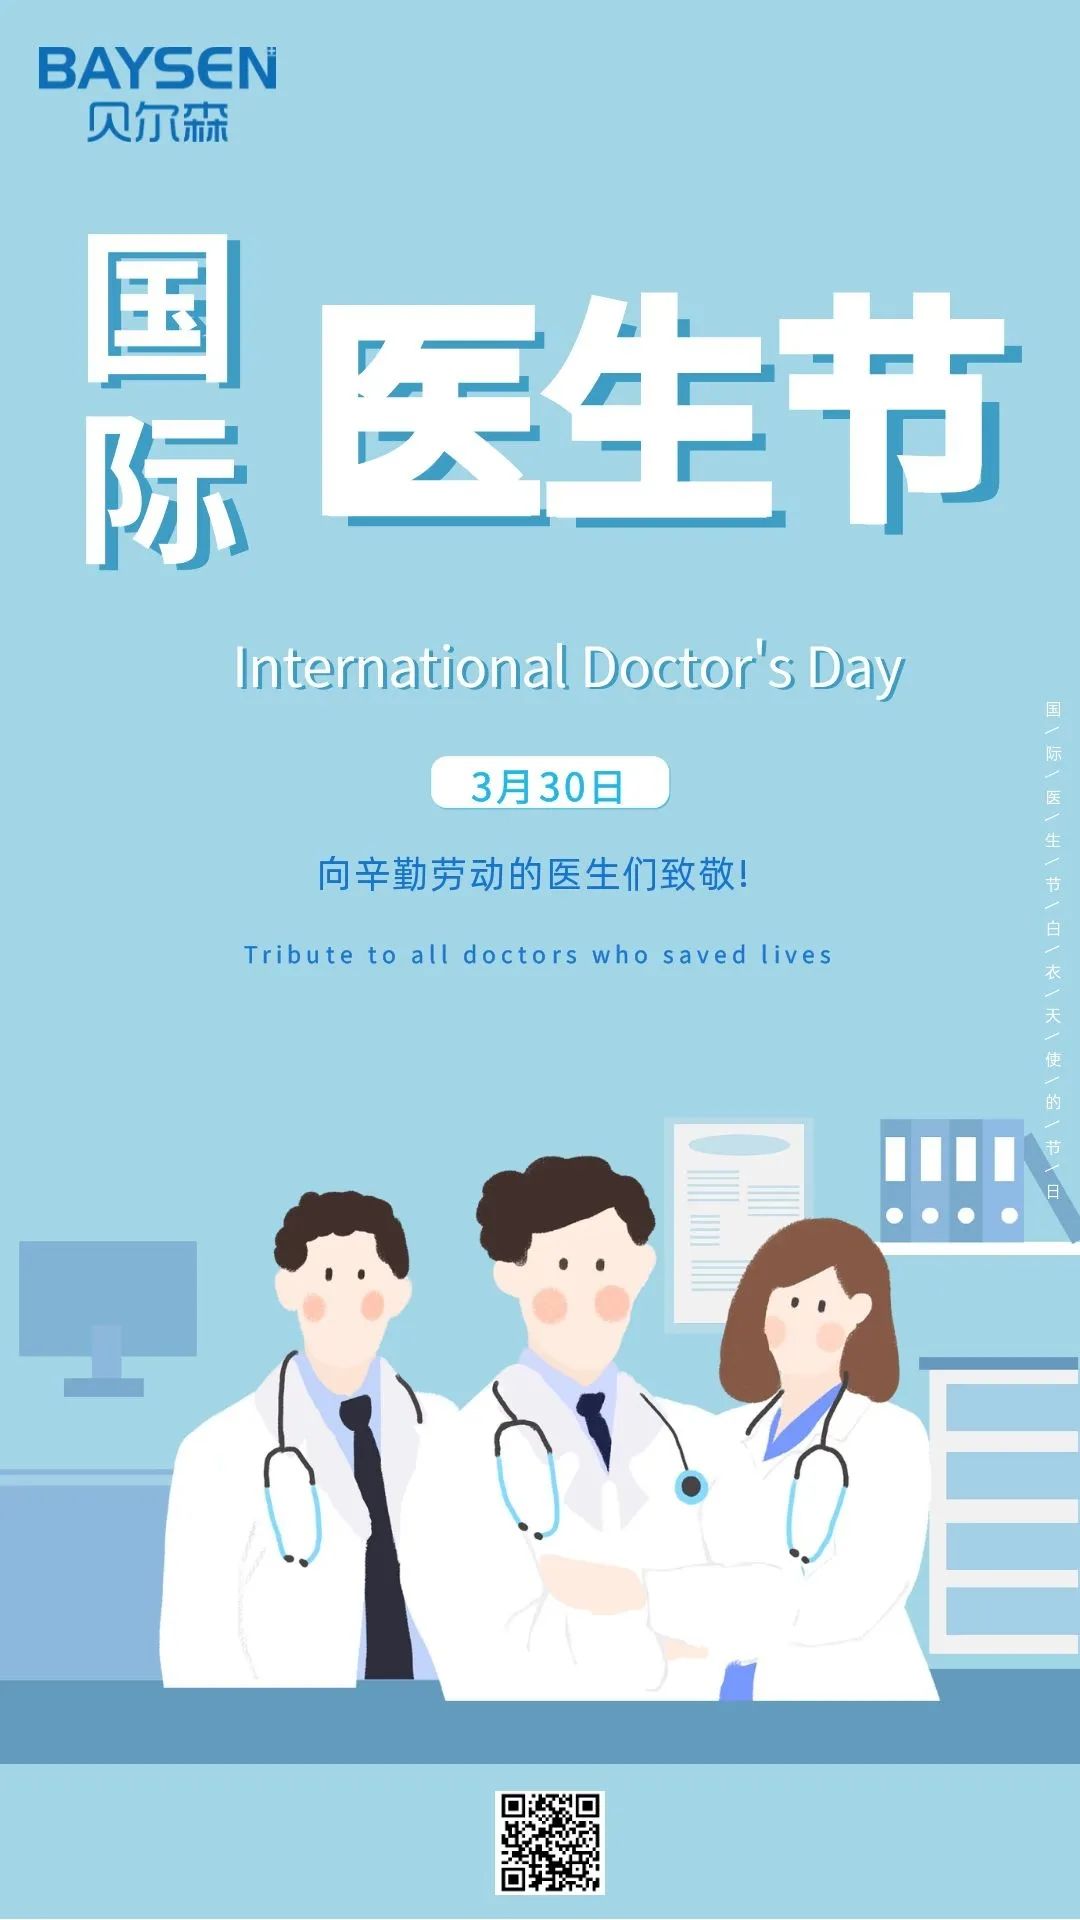 अंतर्राष्ट्रीय डॉक्टर दिवस